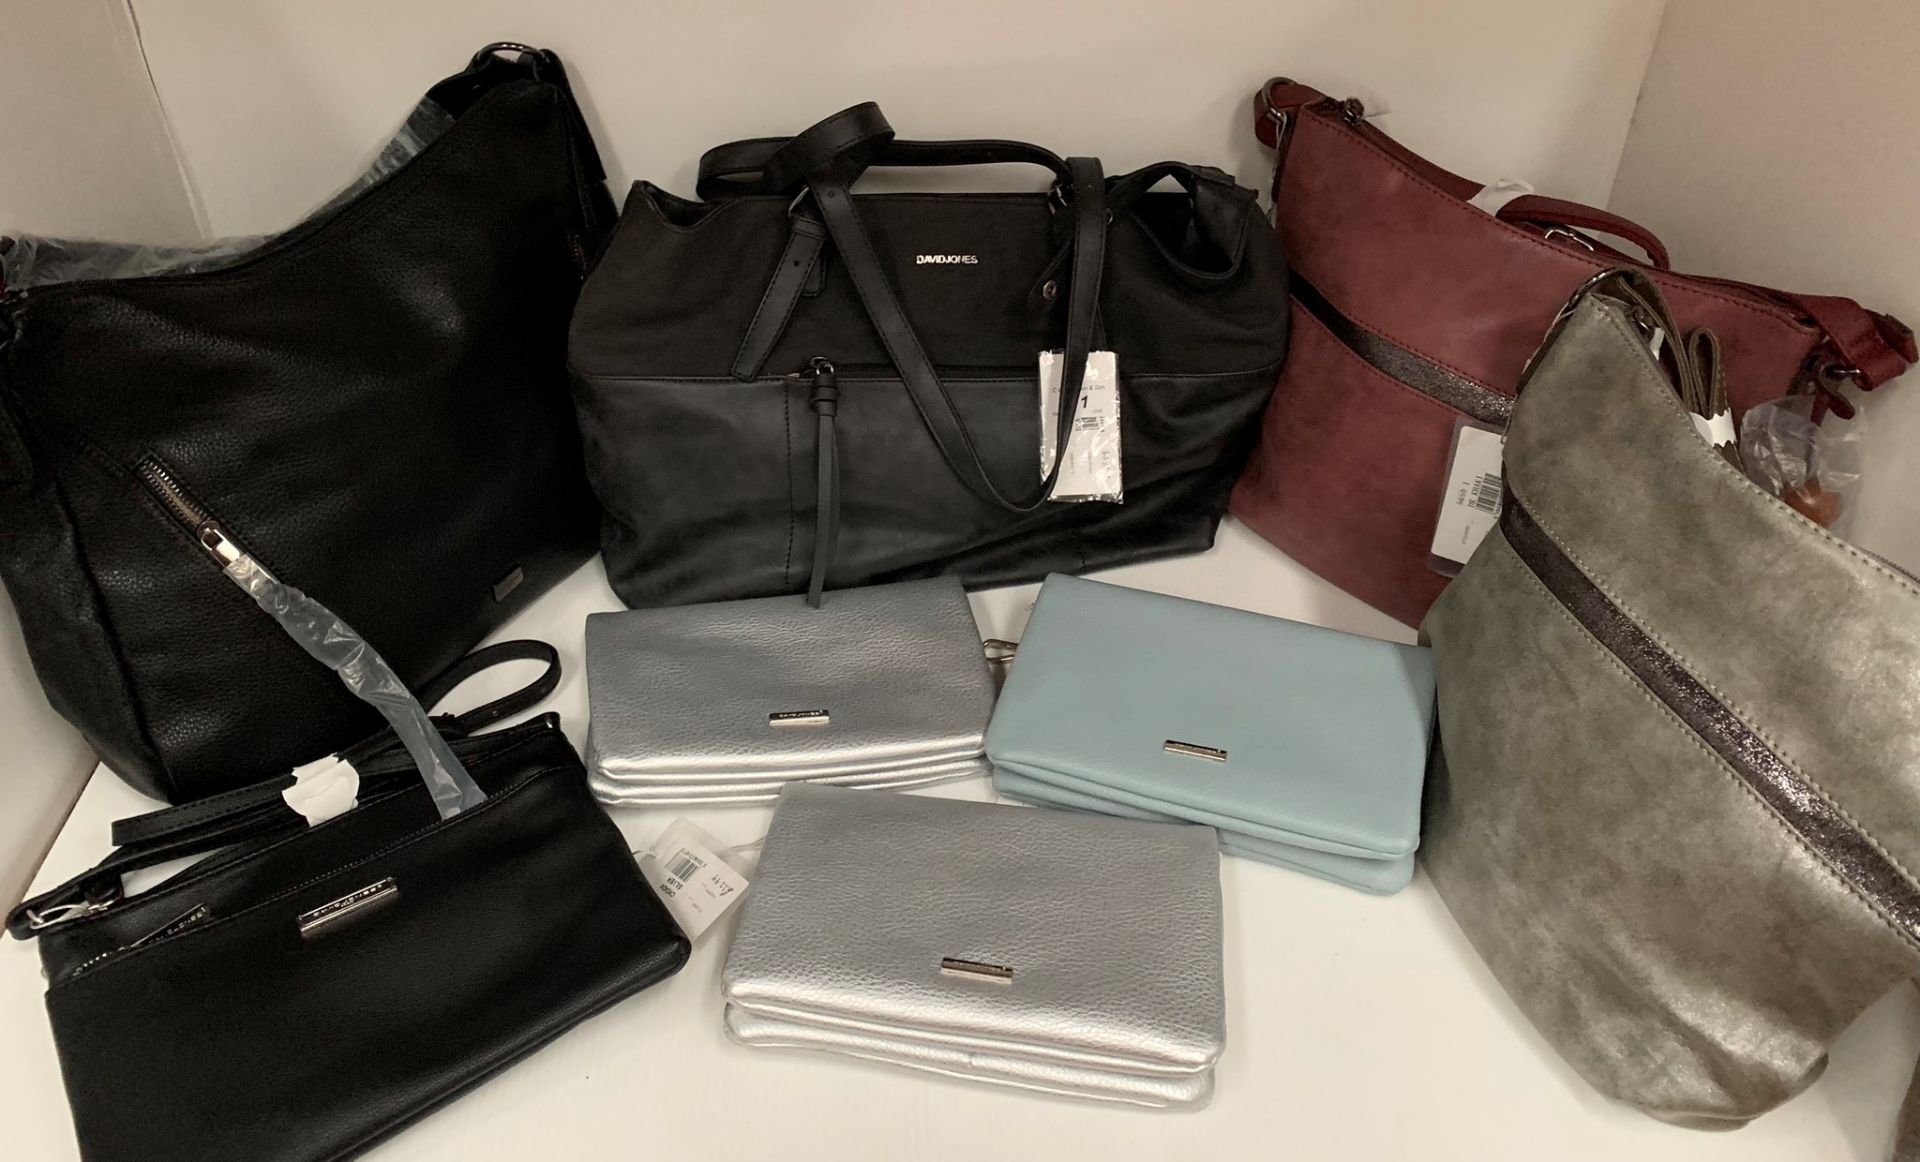 8 x assorted handbags by David Jones, Spirit, etc.